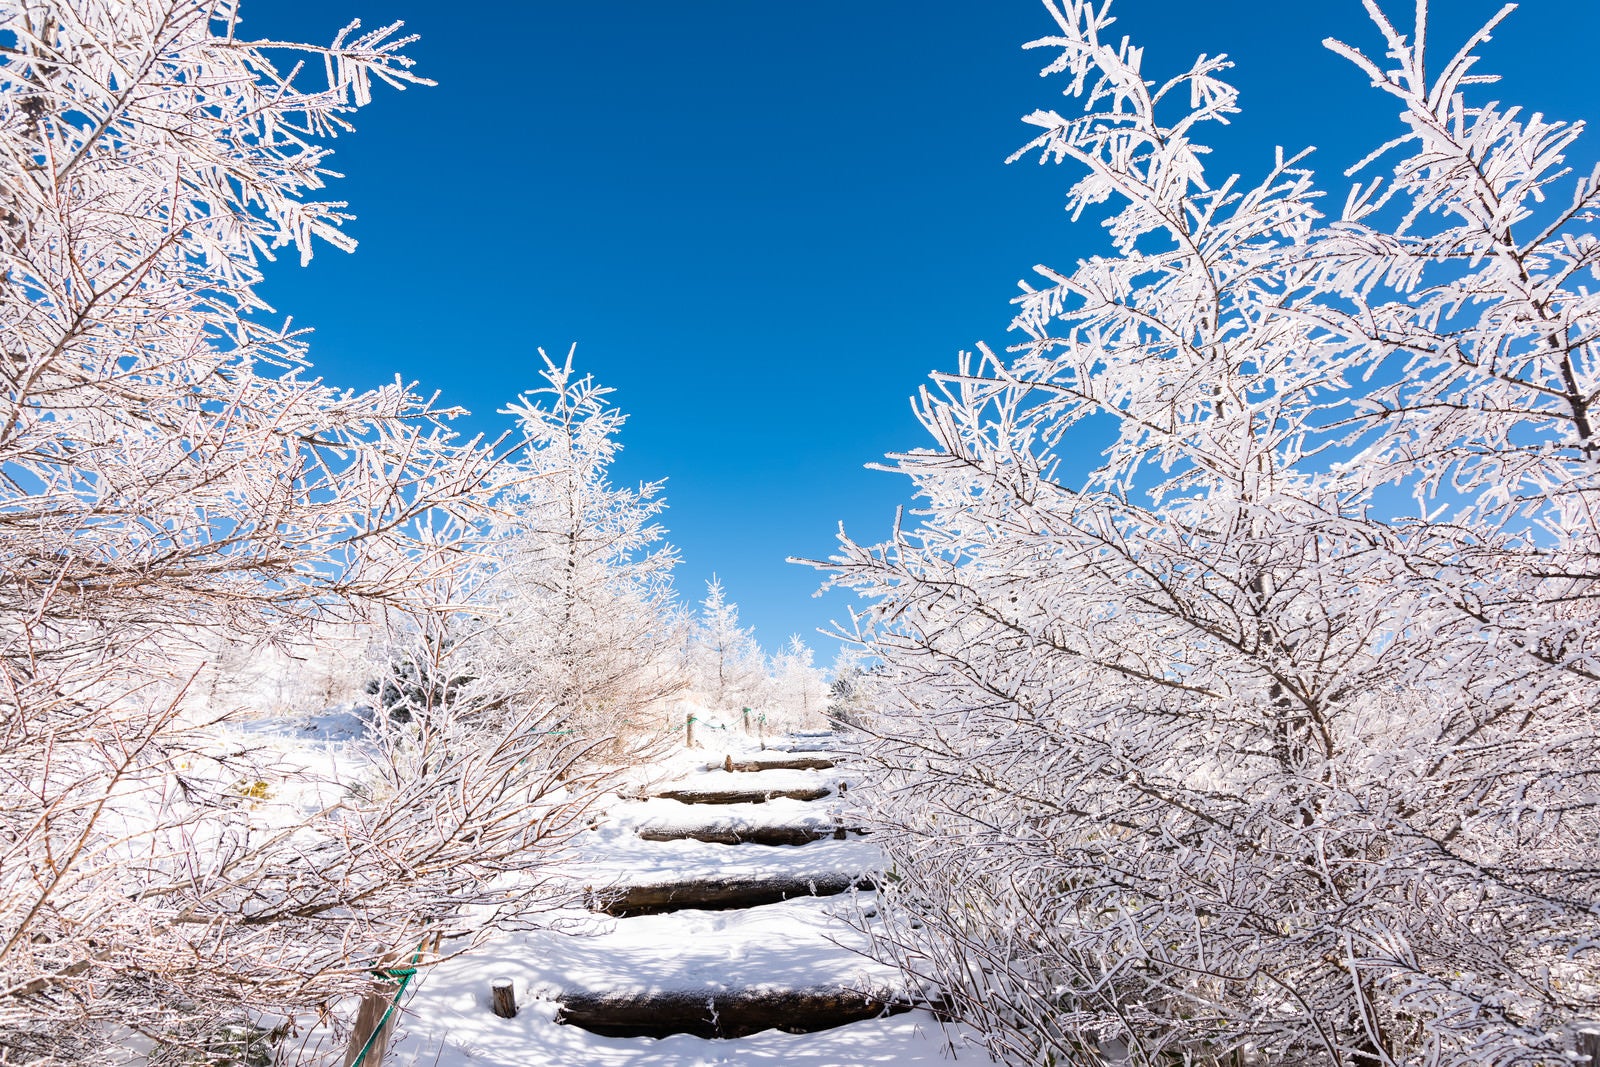 「美ヶ原牛伏山の樹氷に囲まれた登山道」の写真